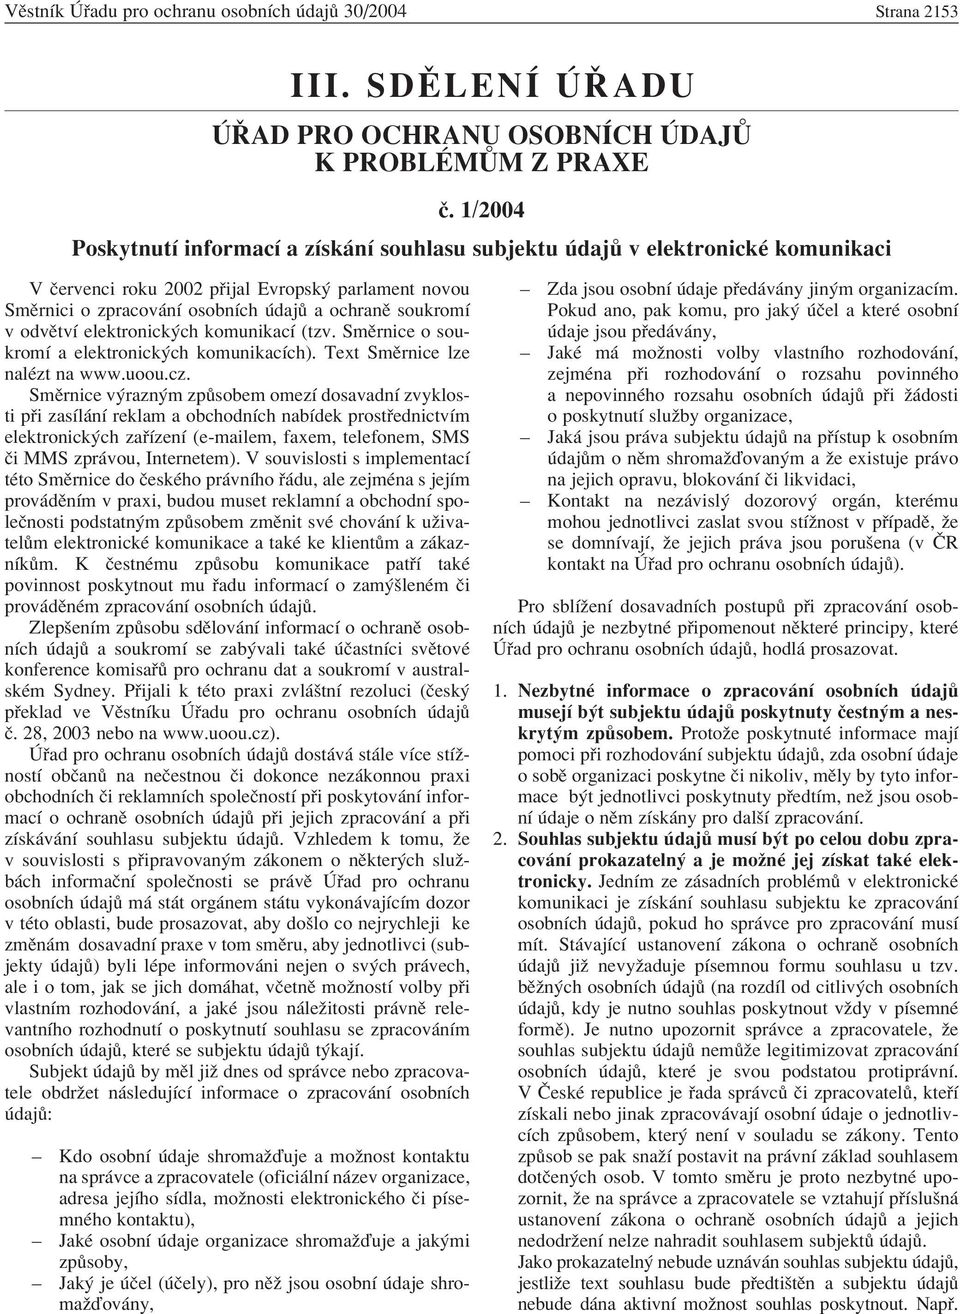 odvïtvì elektronick ch komunikacì (tzv. SmÏrnice o soukromì a elektronick ch komunikacìch). Text SmÏrnice lze nalèzt na www.uoou.cz.